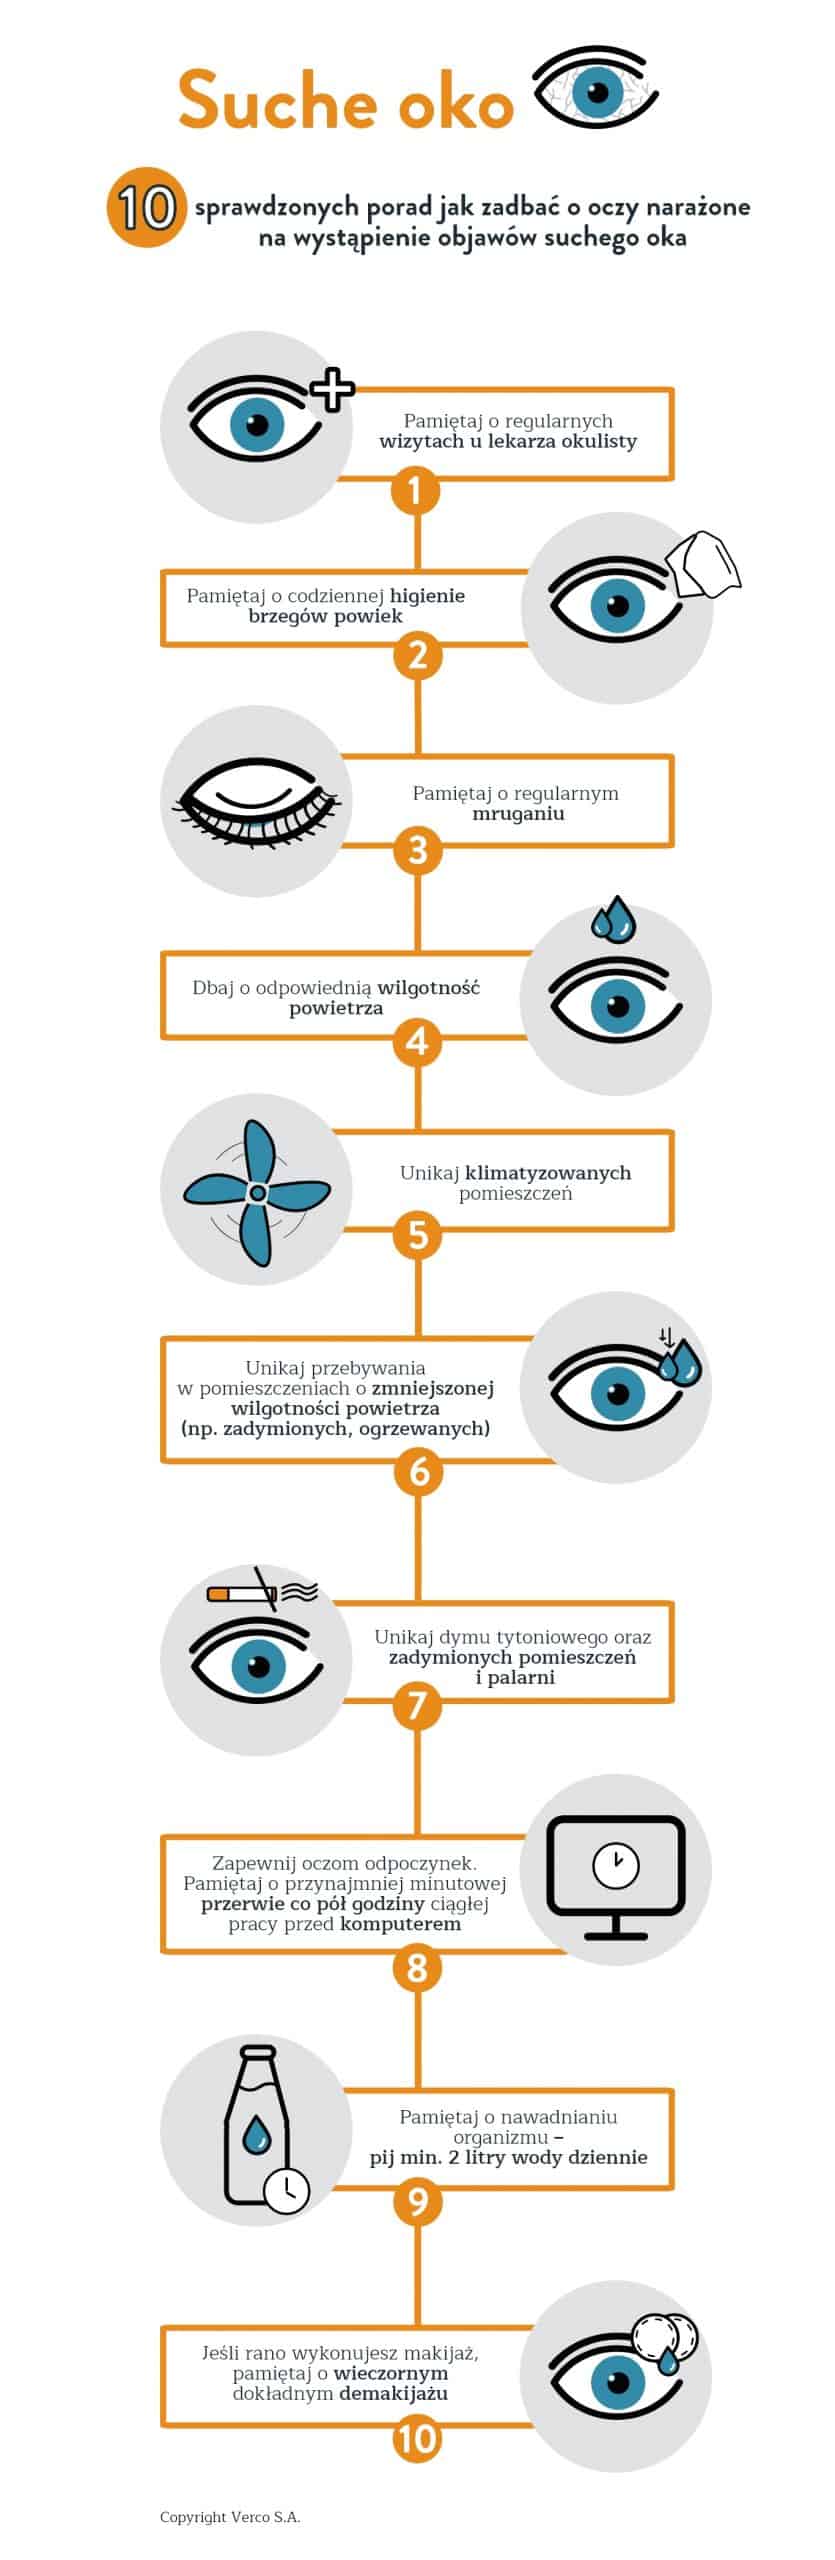 Jak zadbać o oczy narażone na wystąpienie objawów suchego oka?